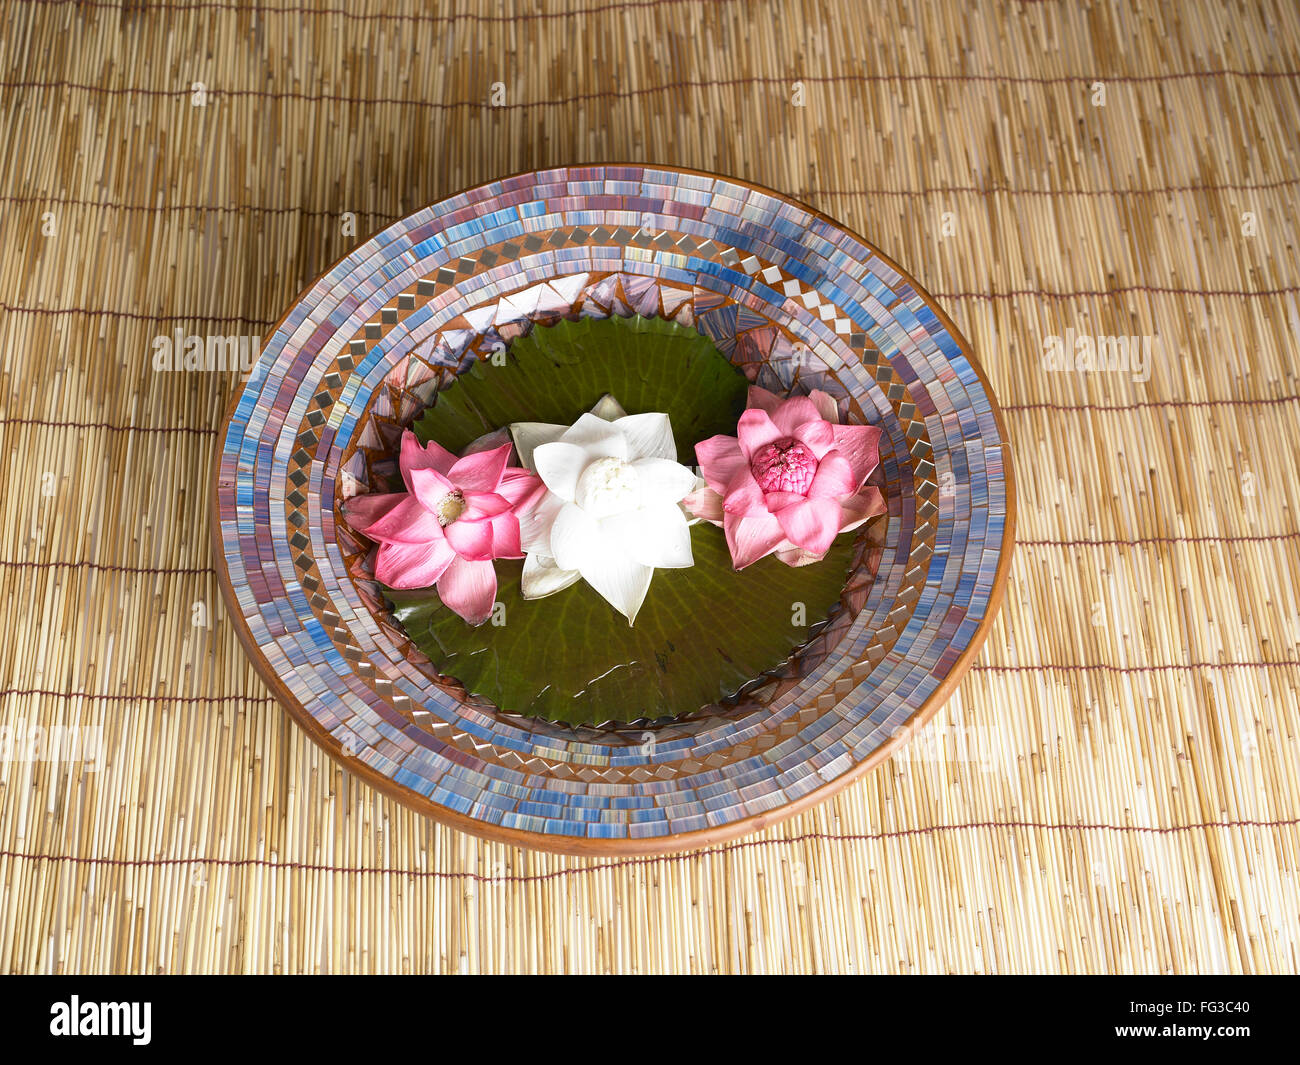 Dos rojo y una flor de loto blanco mantenido en placa en la estera de madera Foto de stock